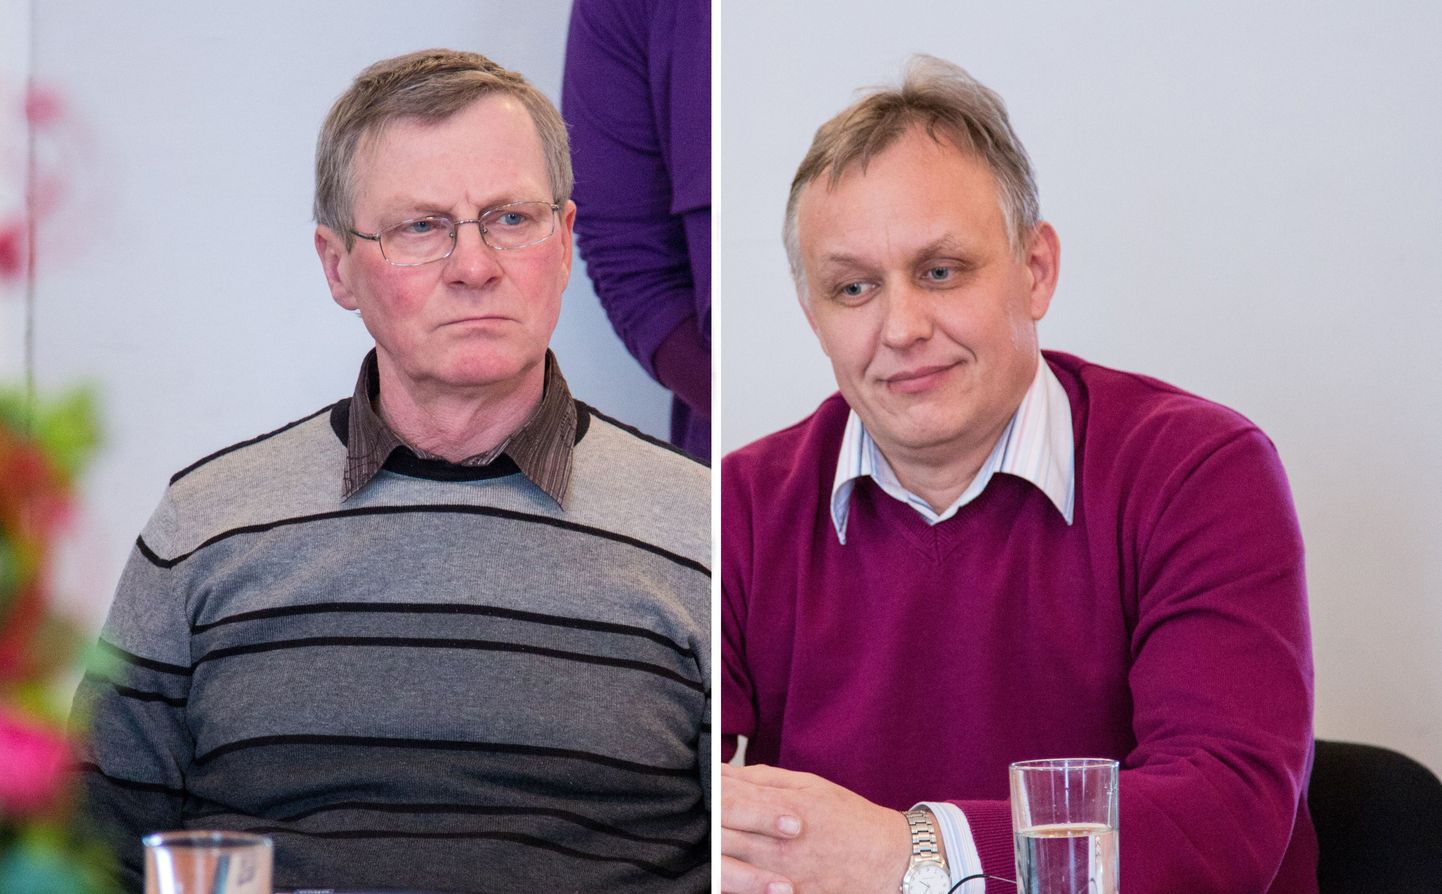 Otepää volikogu liikmete Silver Eljandi (vasakul) ja Urmas Kuldmaaga oli vabariigi valimiskomisjoni hinnangul vald teinud sisuliselt töölepingud, mitte käsunduslepingud.